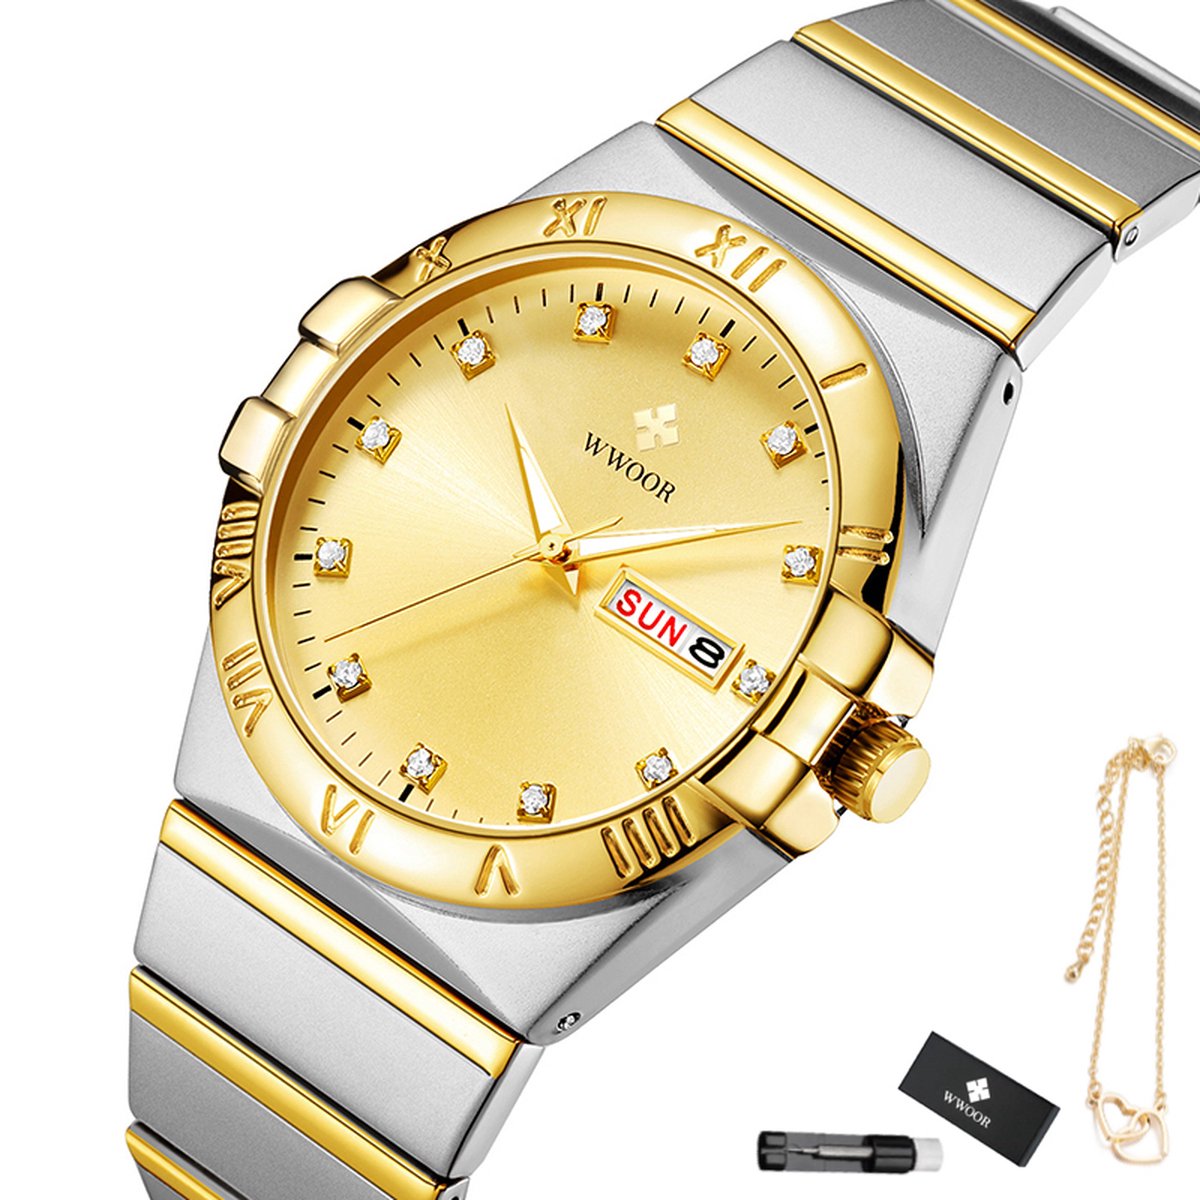 WWOOR - Horloge Dames - Cadeau voor Vrouw - 30 mm - Zilver Goud